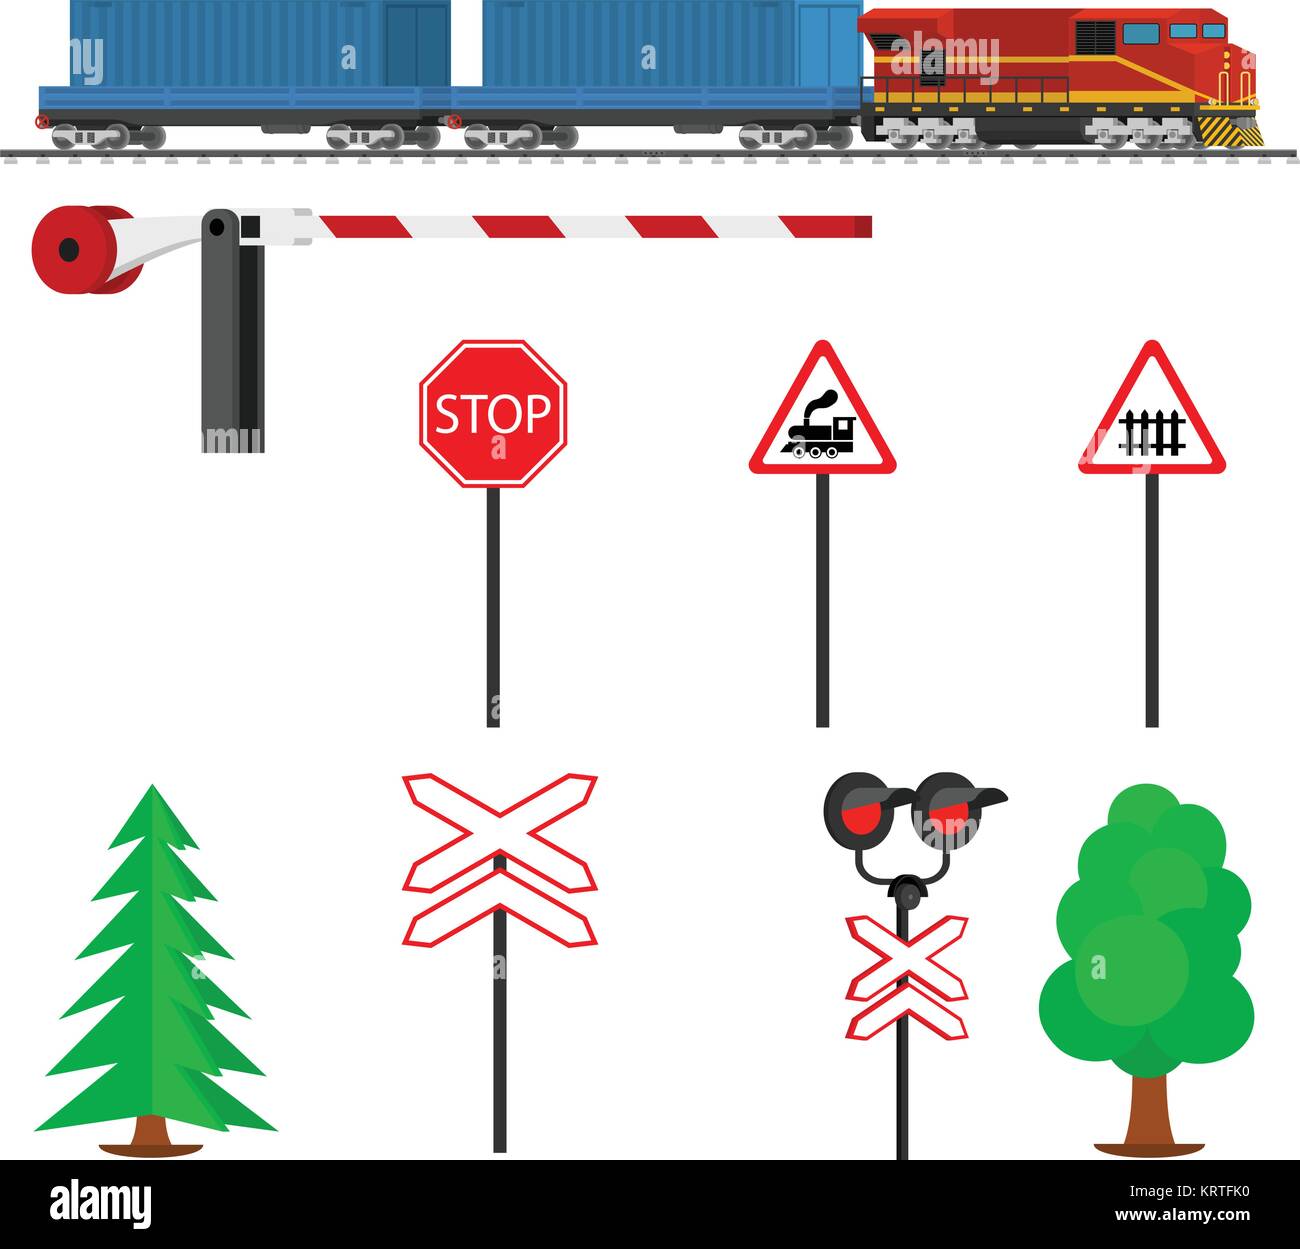 Tráfico Ferroviario y tren con contenedores. Transporte Ferrocarril. Equipos Ferroviarios con señales, barreras, alarmas, luces de tráfico. Ic plana Ilustración del Vector